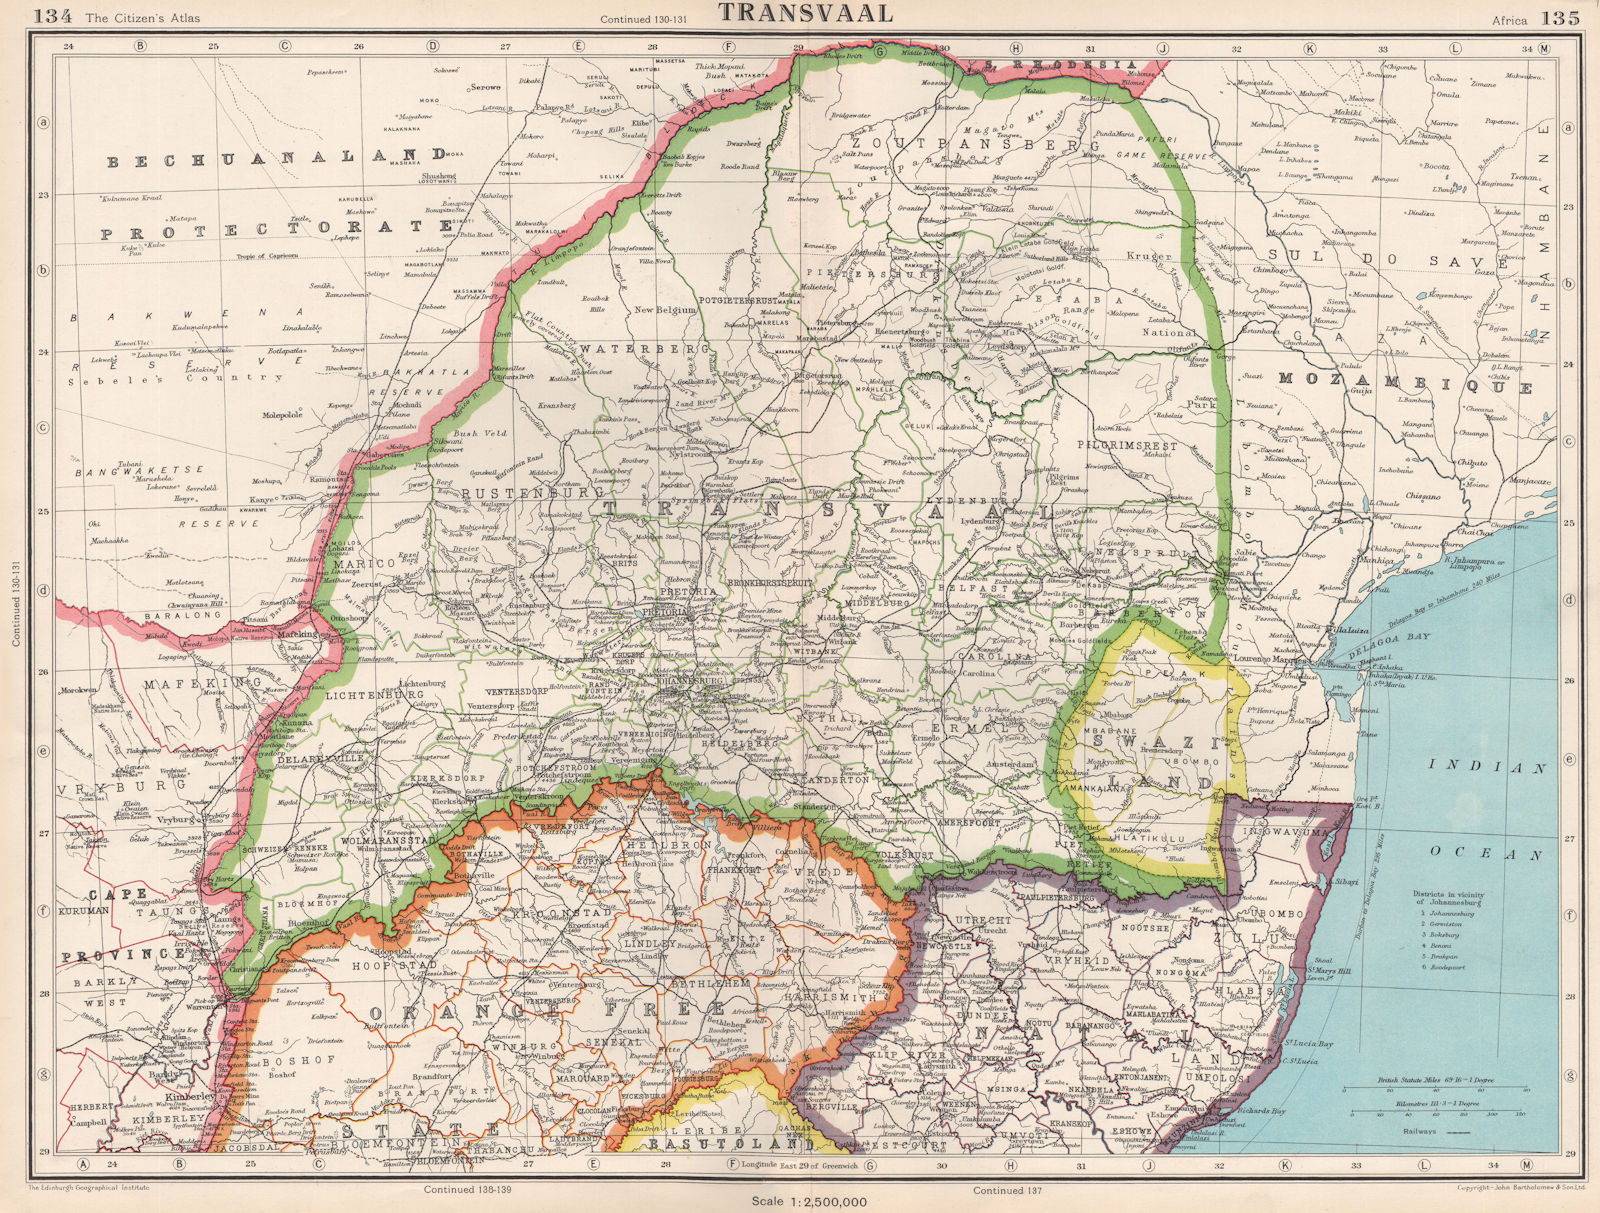 TRANSVAAL. South Africa. Railways. + Swaziland. BARTHOLOMEW 1952 old map